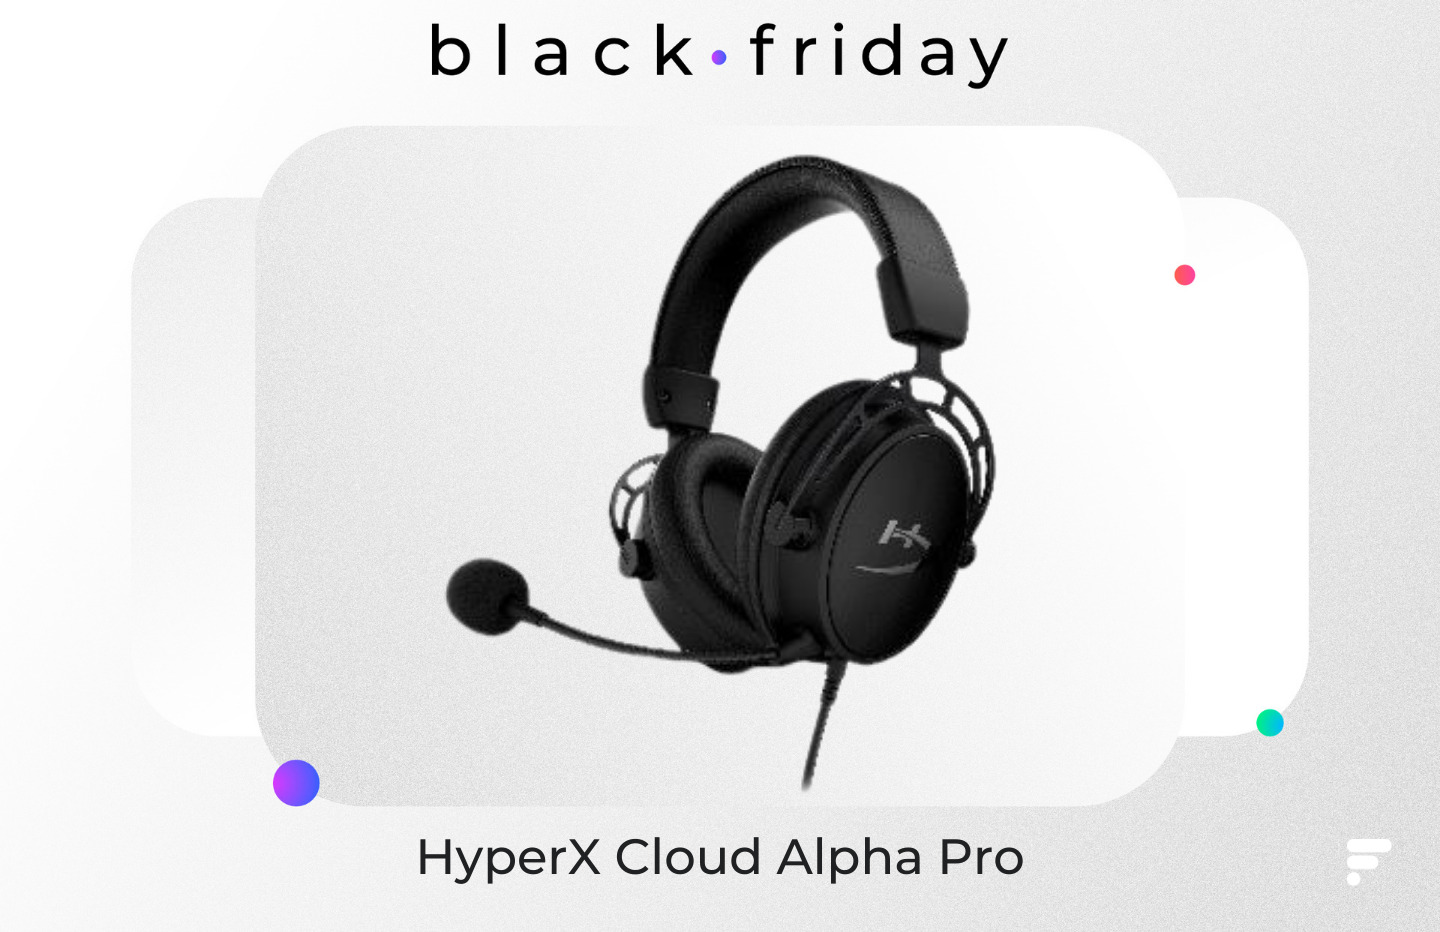 Le micro-casque HyperX Cloud Alpha Pro est à -50 % pour le Black Friday